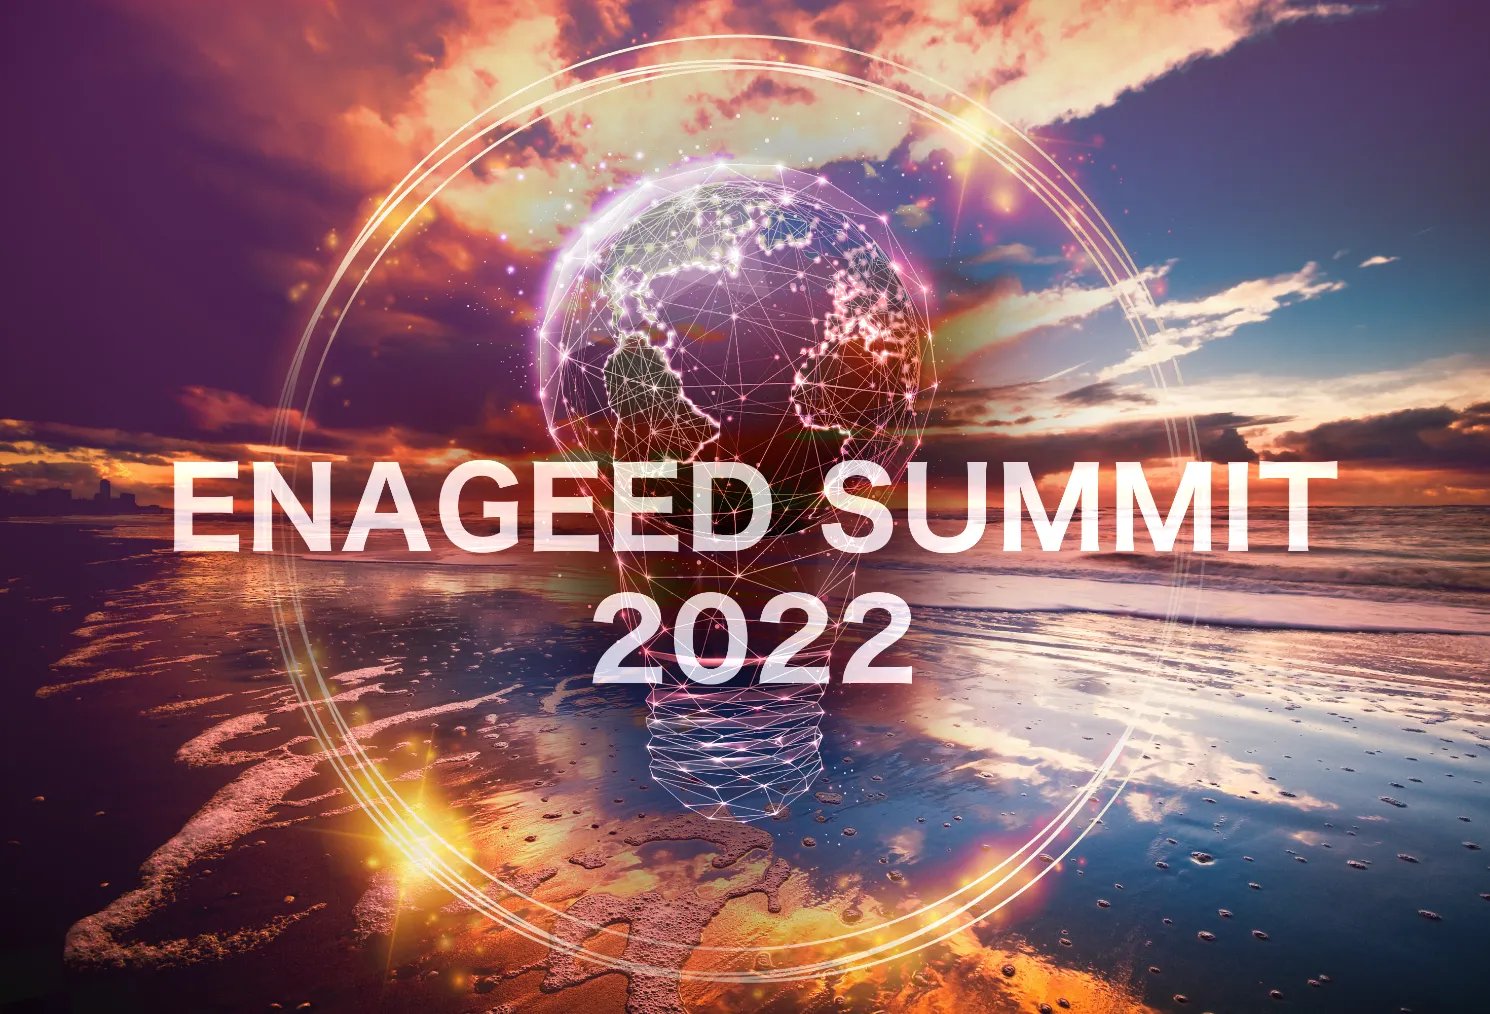 ENAGEED SUMMIT 2022